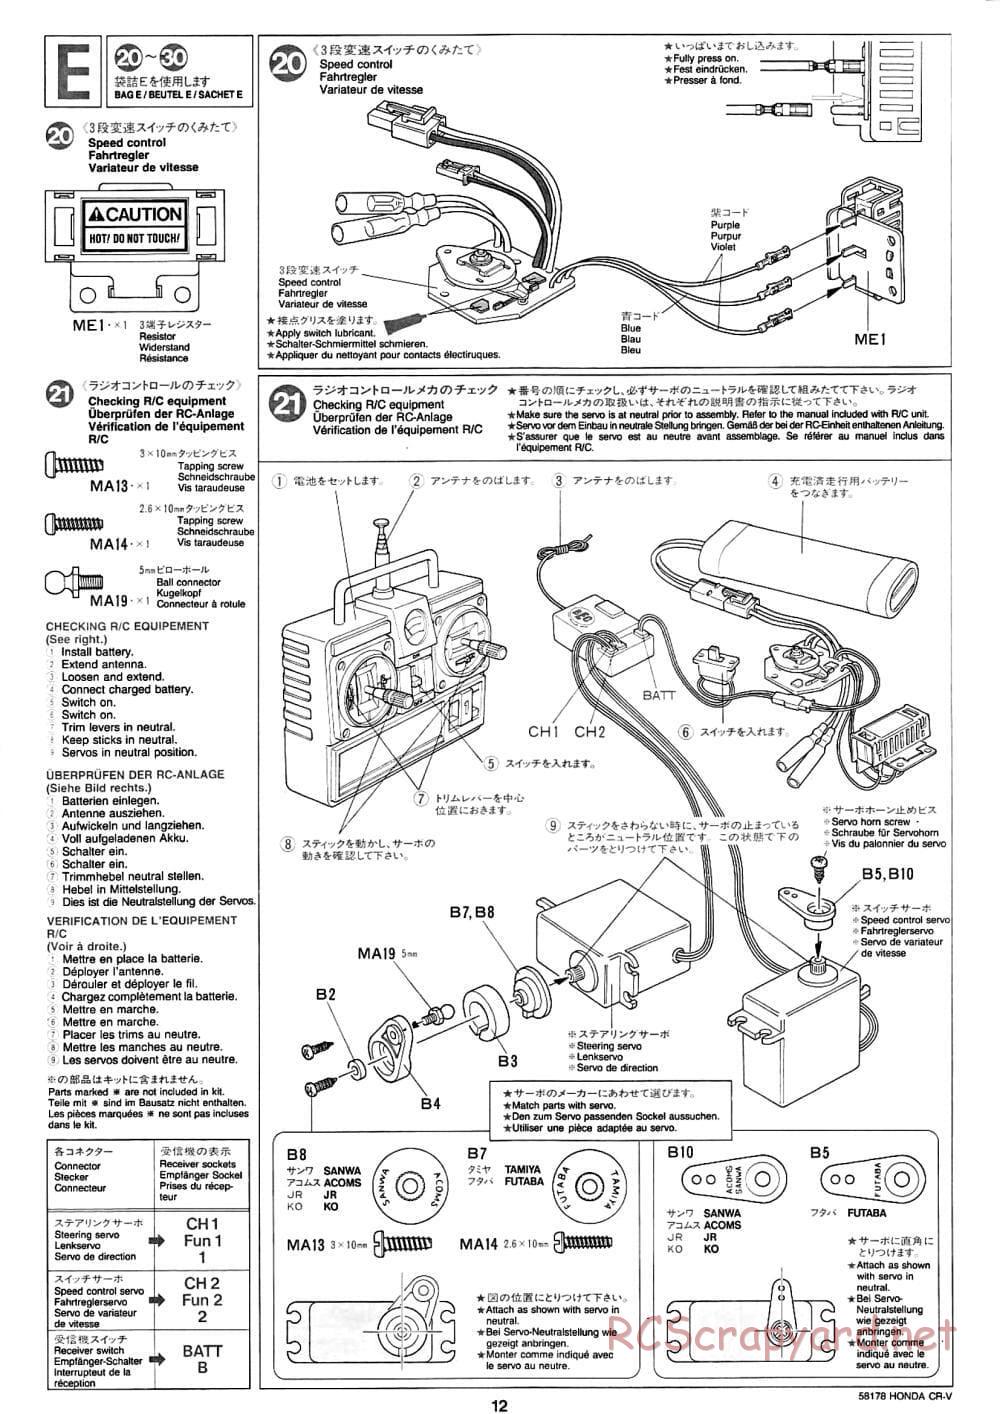 Tamiya - Honda CR-V - CC-01 Chassis - Manual - Page 12